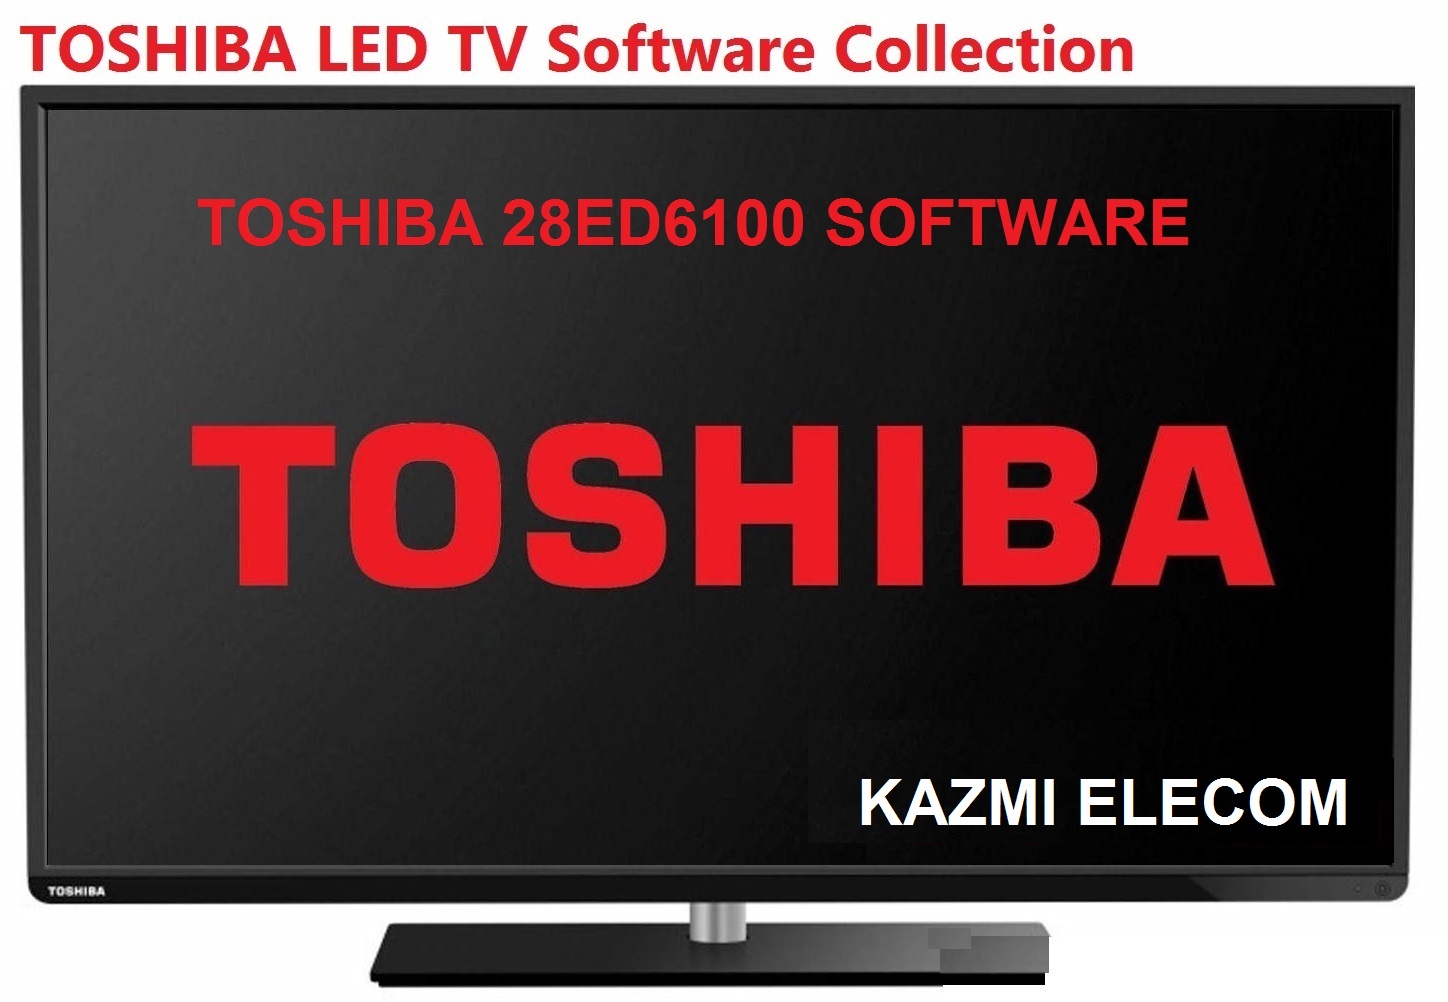 Toshiba 28Ed6100